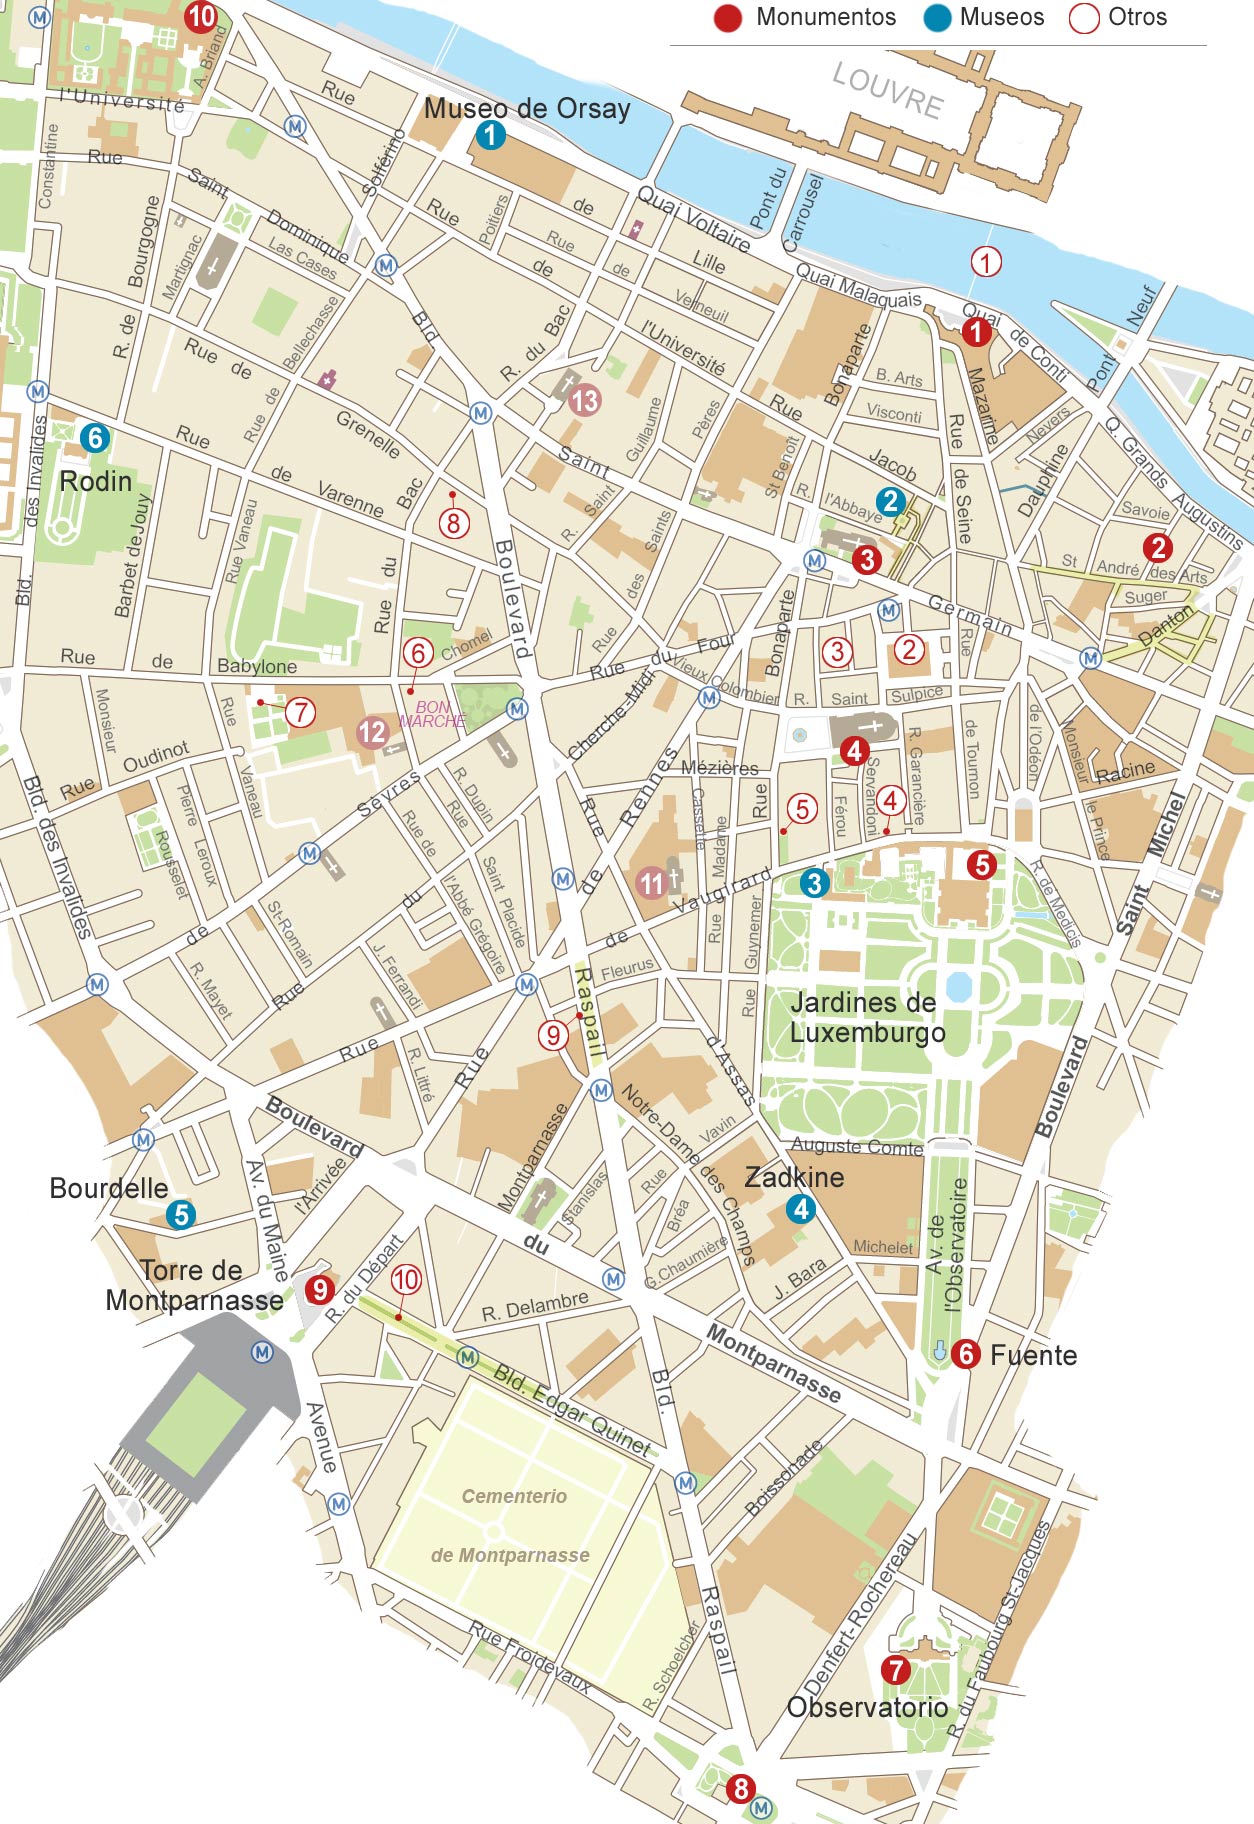 Mapa de París. Zona de Saint-Germain-des-Prés